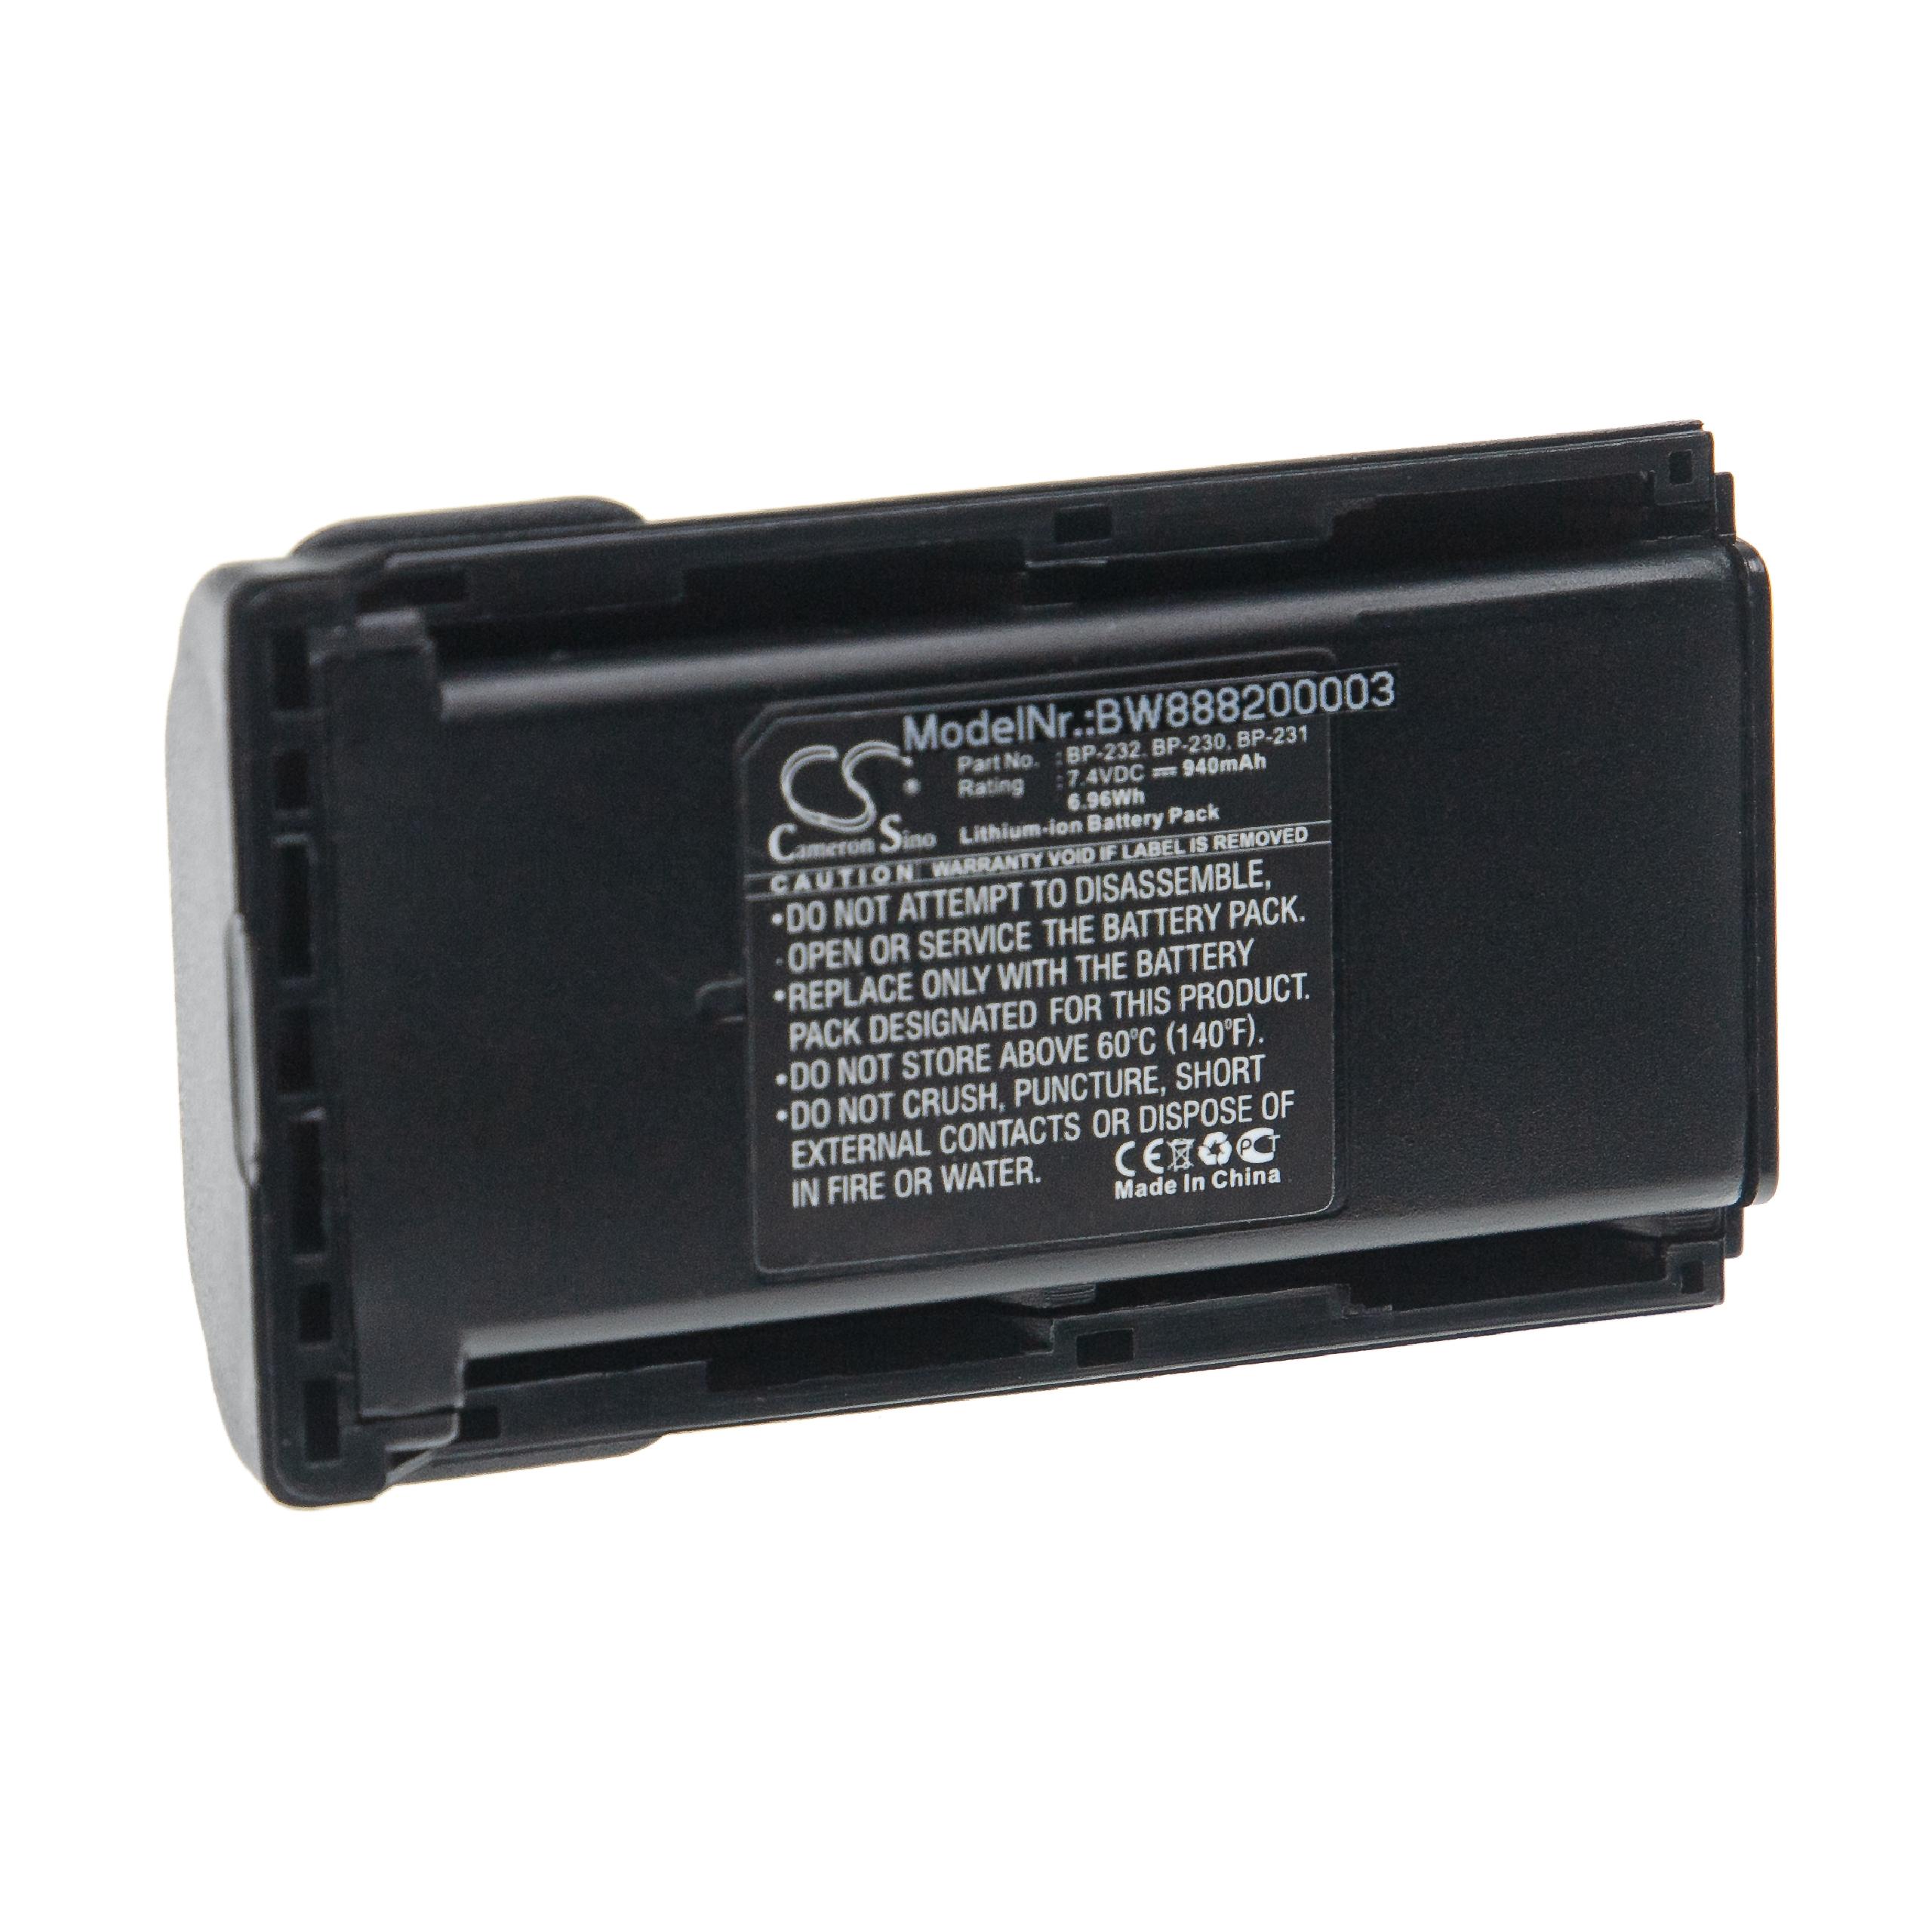 Batteria per dispositivo radio sostituisce Icom BJ-2000, BP-231, BP-230, BP-230N Icom - 940mAh 7,4V Li-Ion